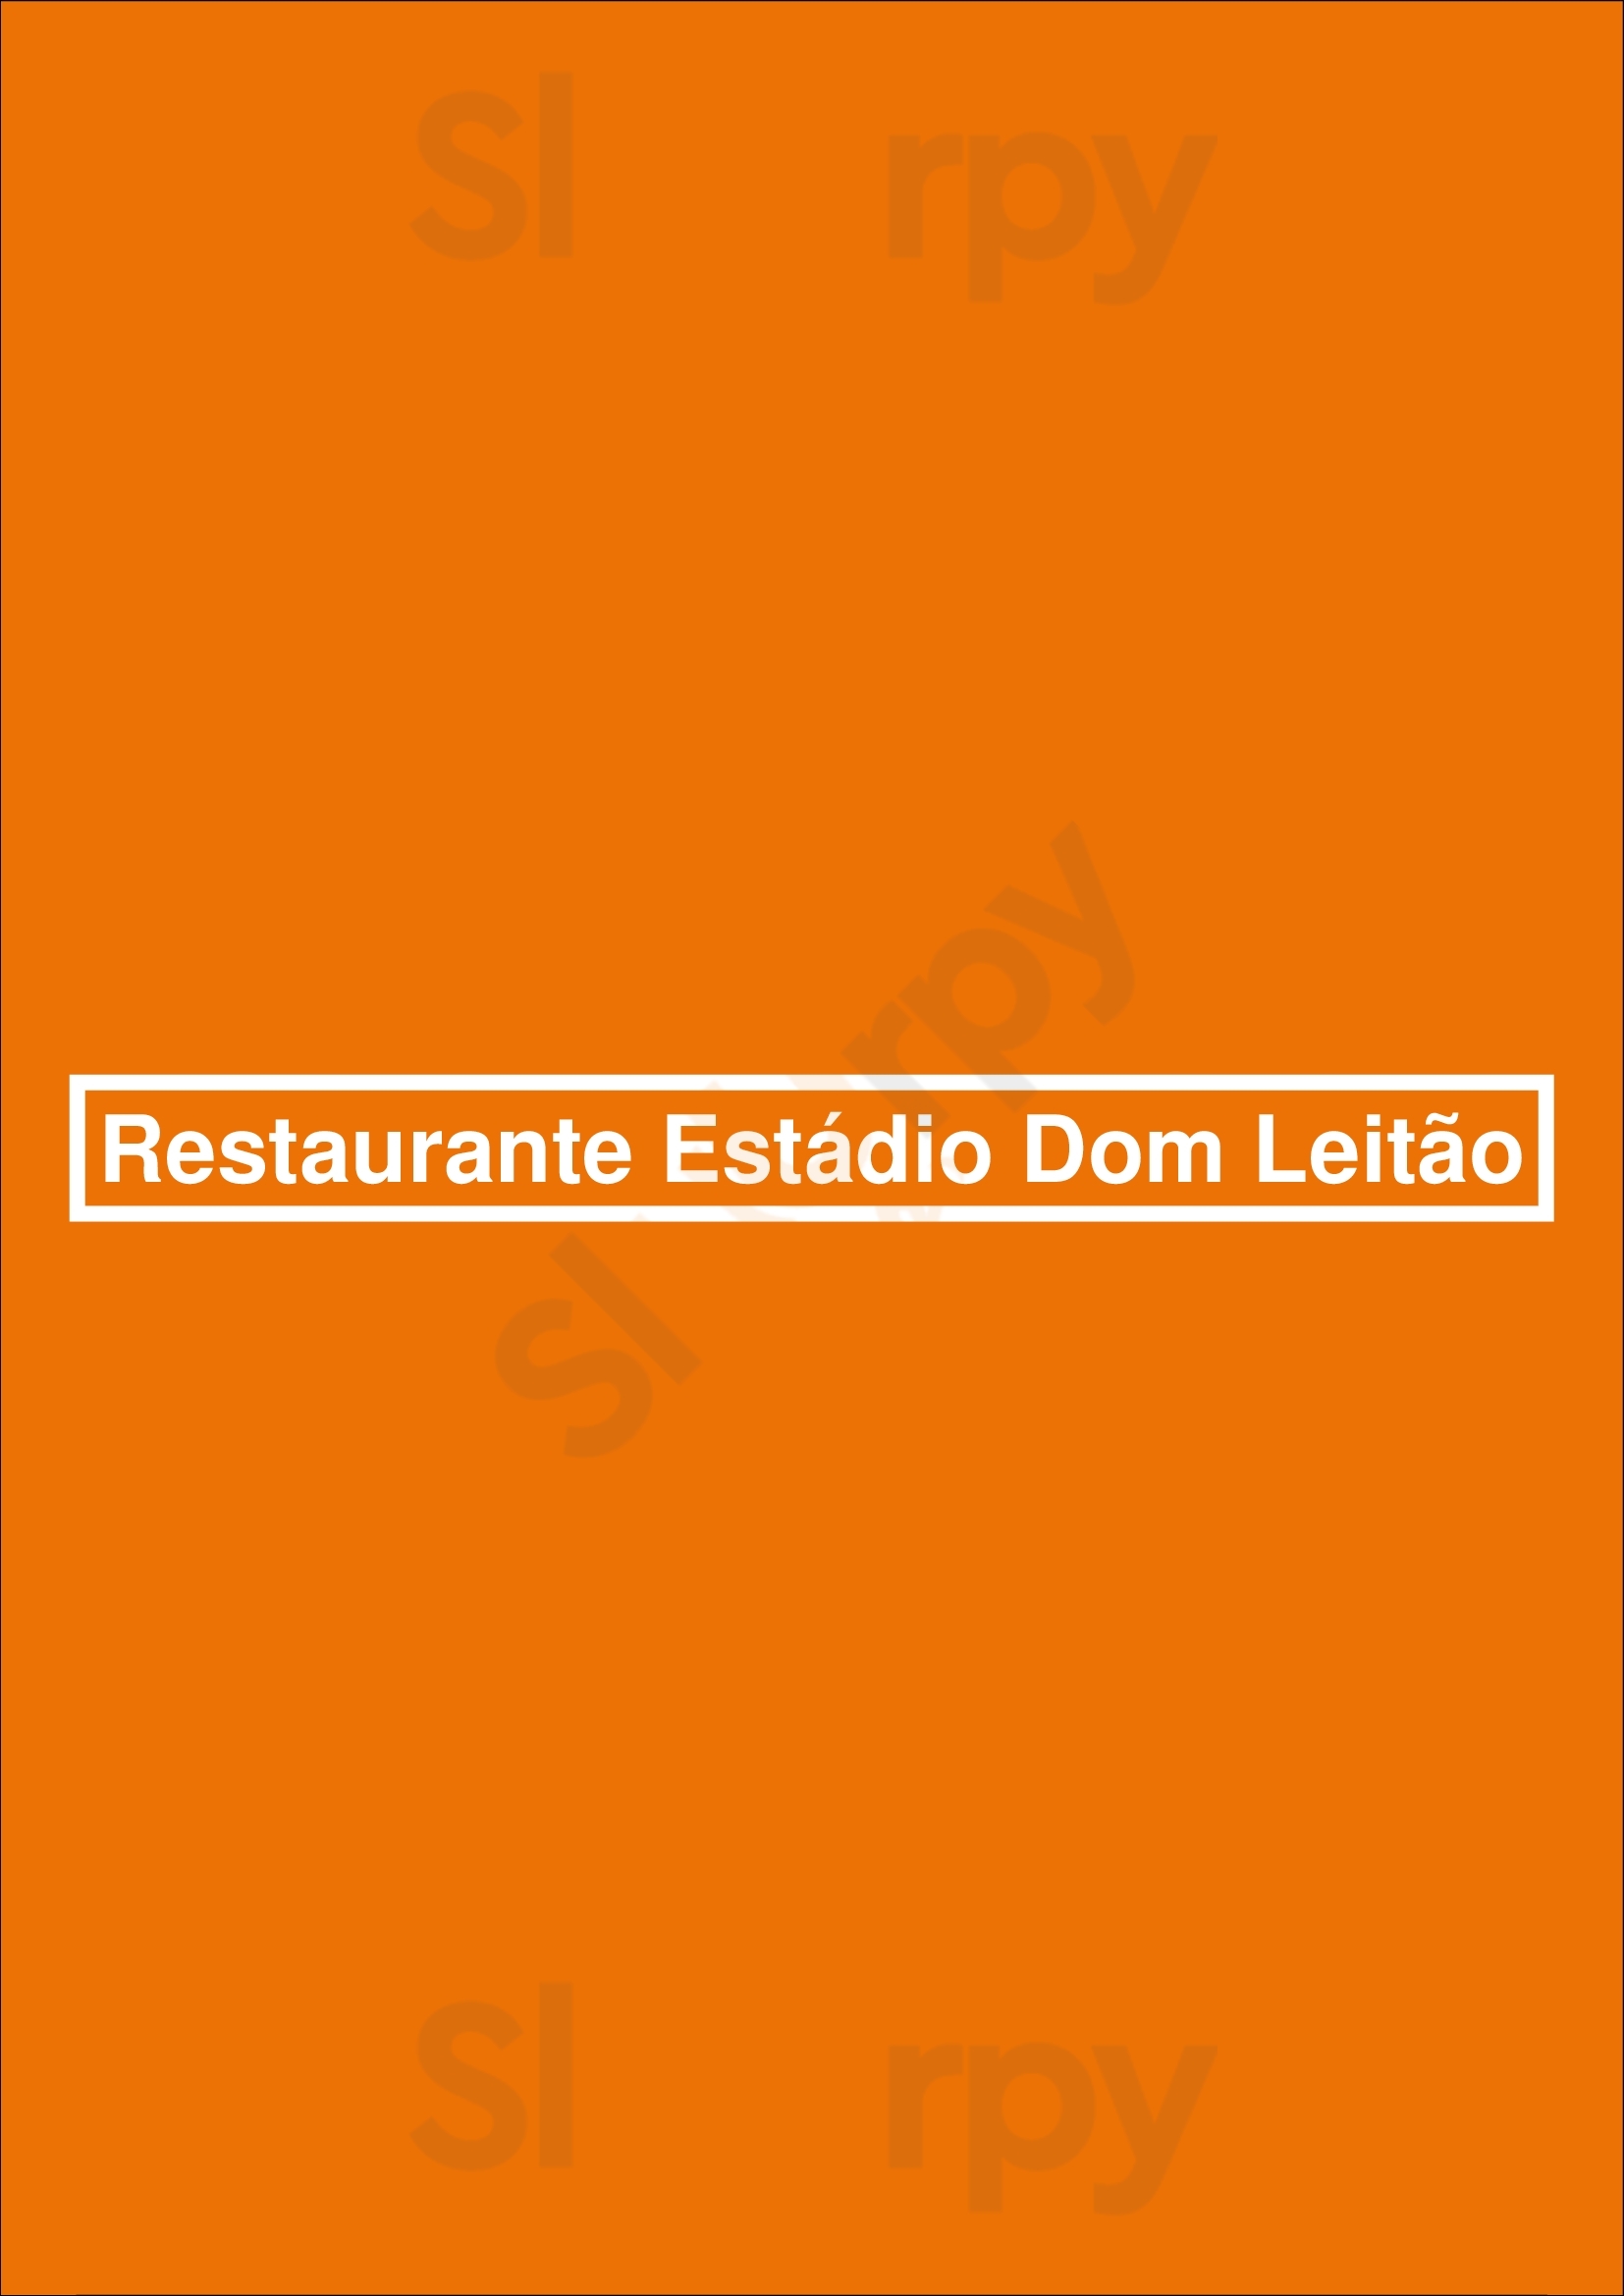 Restaurante Estádio Dom Leitão Lisboa Menu - 1